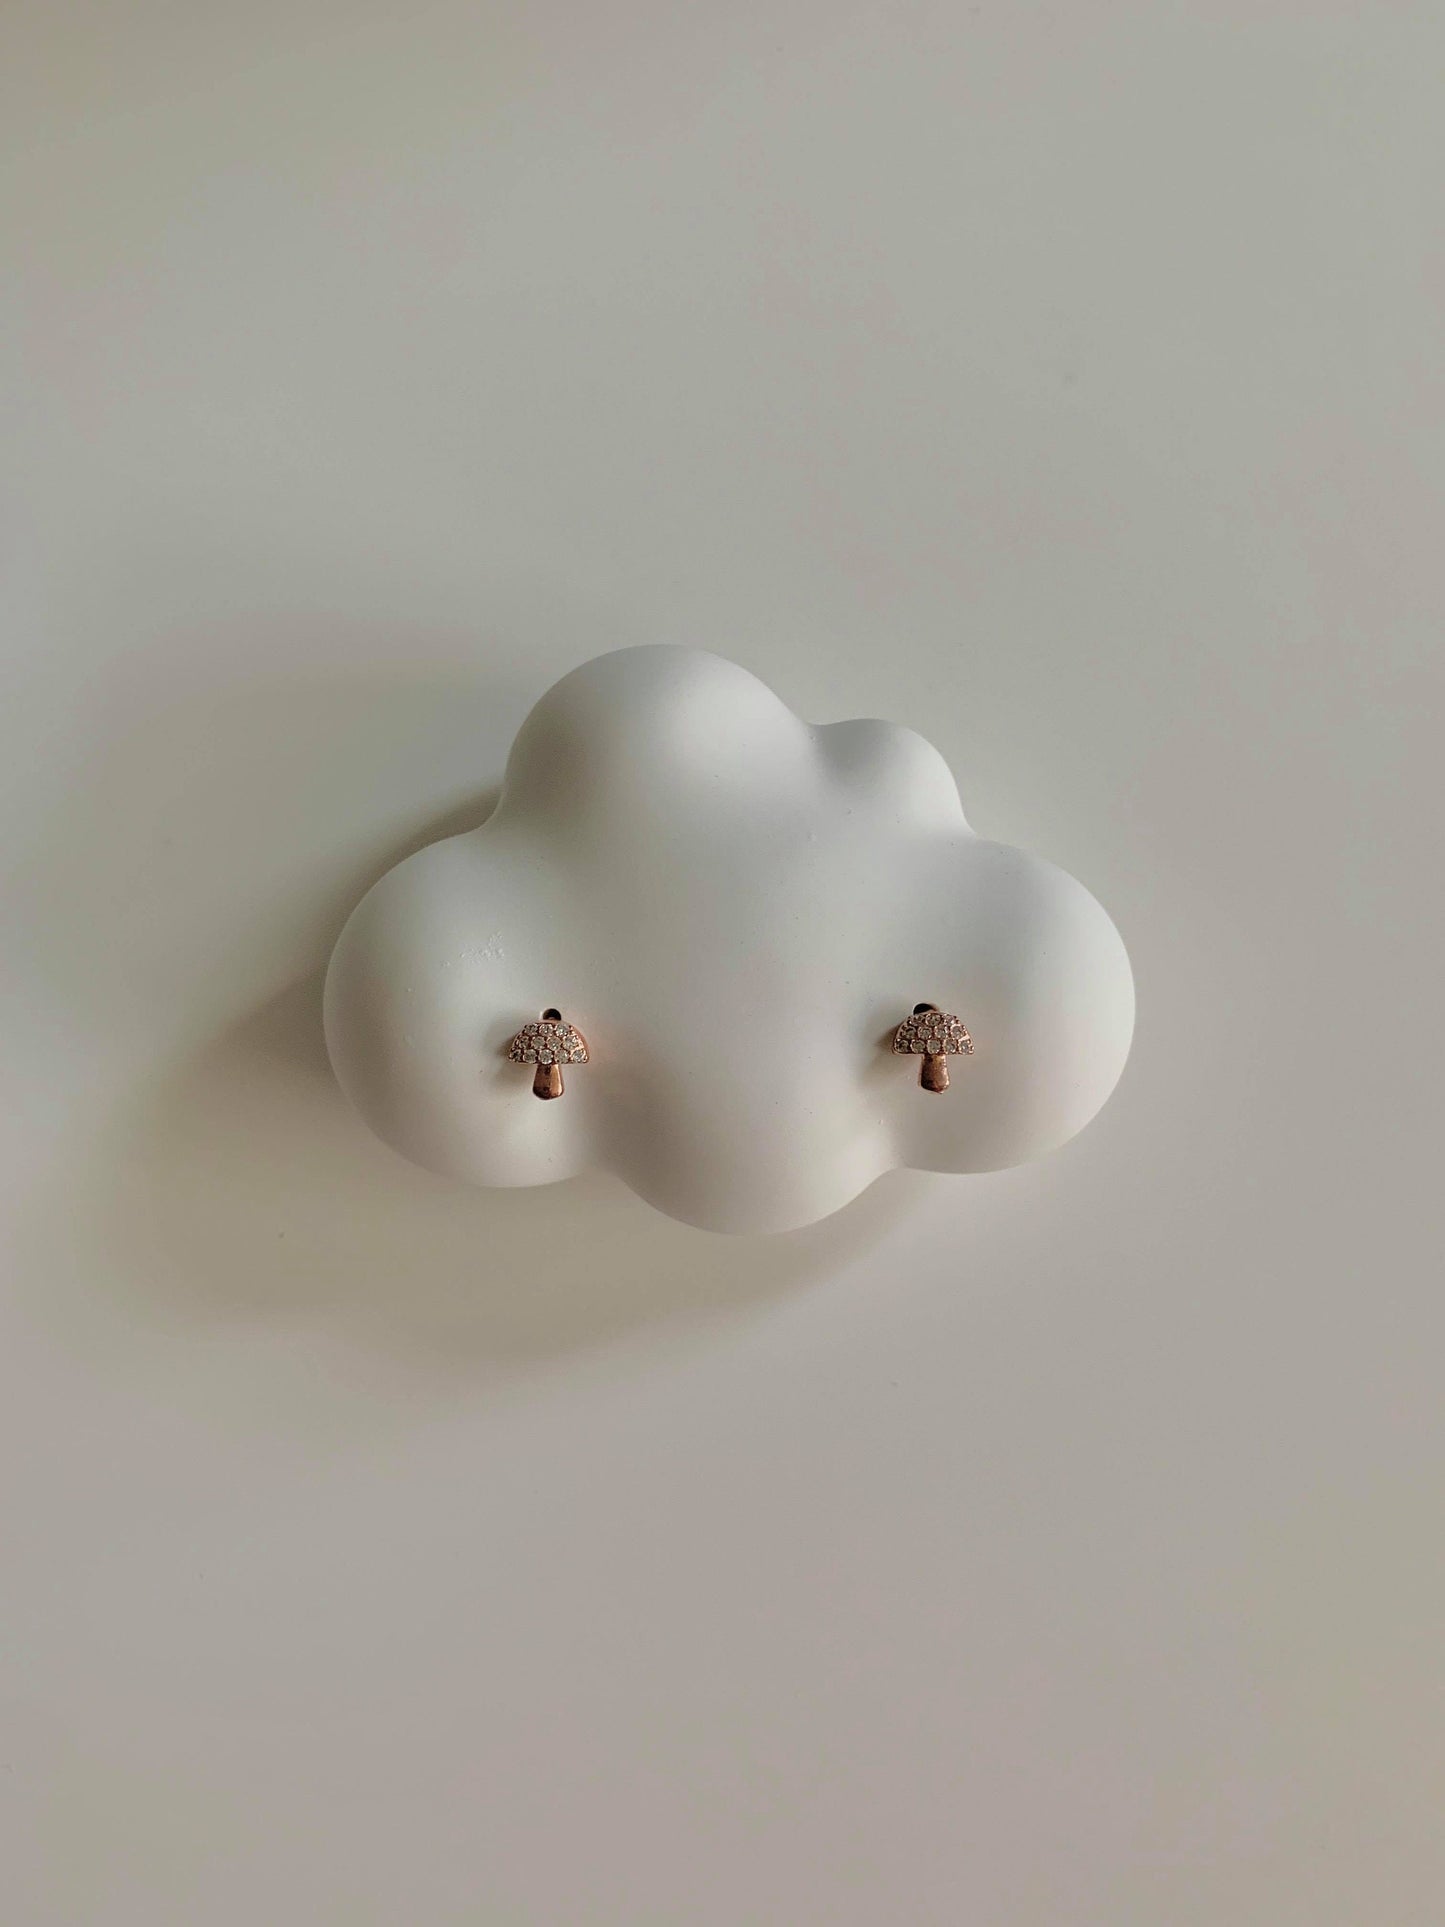 Mini Mushroom Stud Earrings